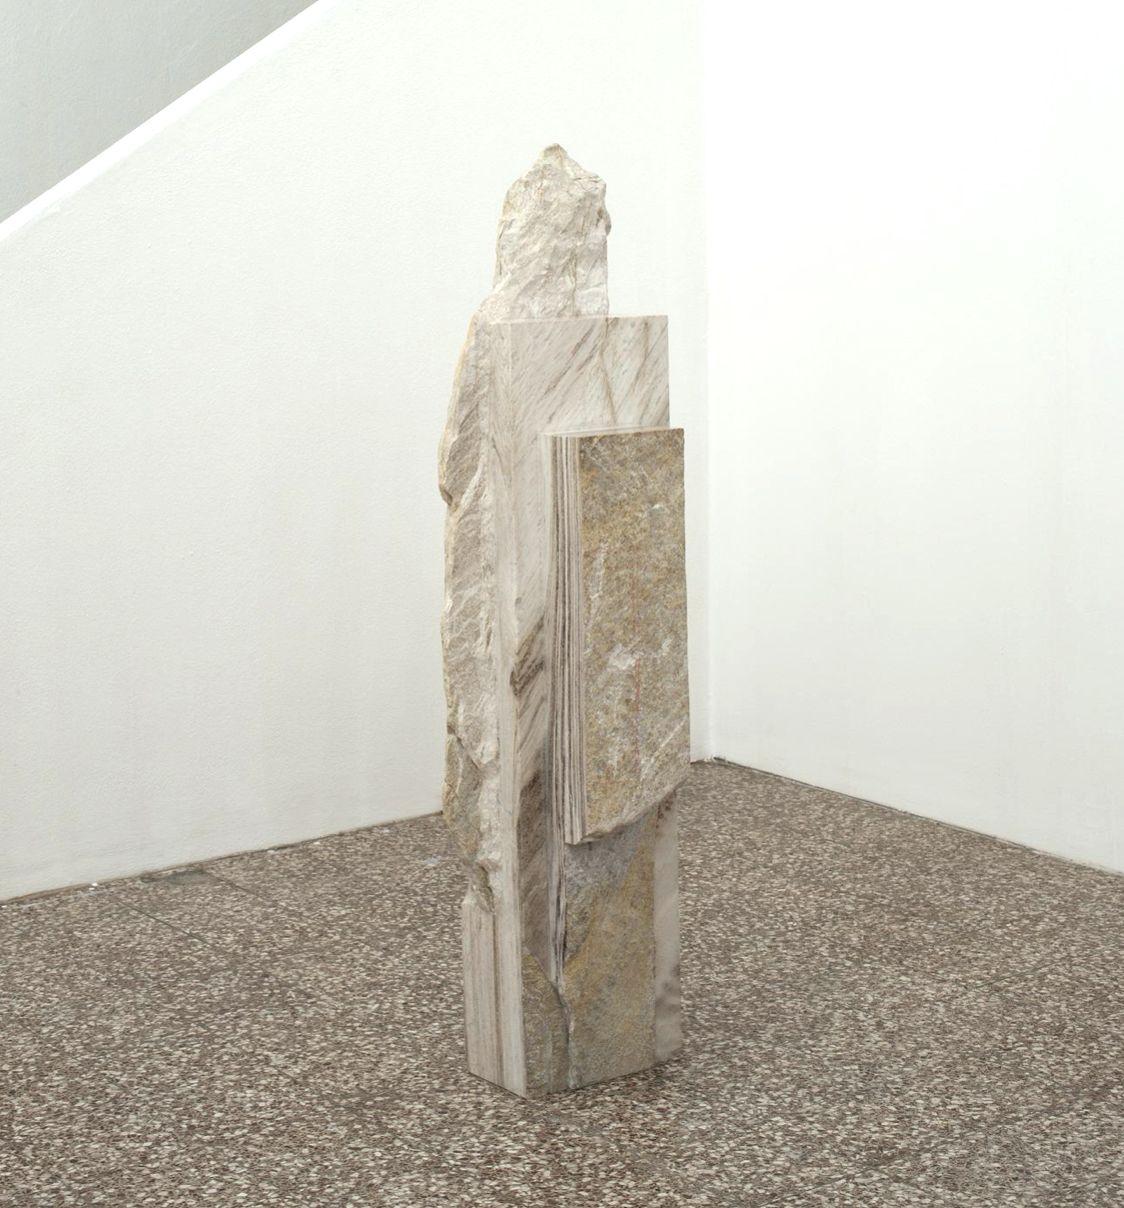 Untitled II, Palissandro ist eine einzigartige Skulptur des zeitgenössischen Künstlers Mattia Bosco. Die Skulptur ist aus Palissandro-Marmor gefertigt und hat die Maße 142 × 46 × 35 cm (55,9 × 18,1 × 13,8 in). 

Das vom Künstler angewandte Verfahren